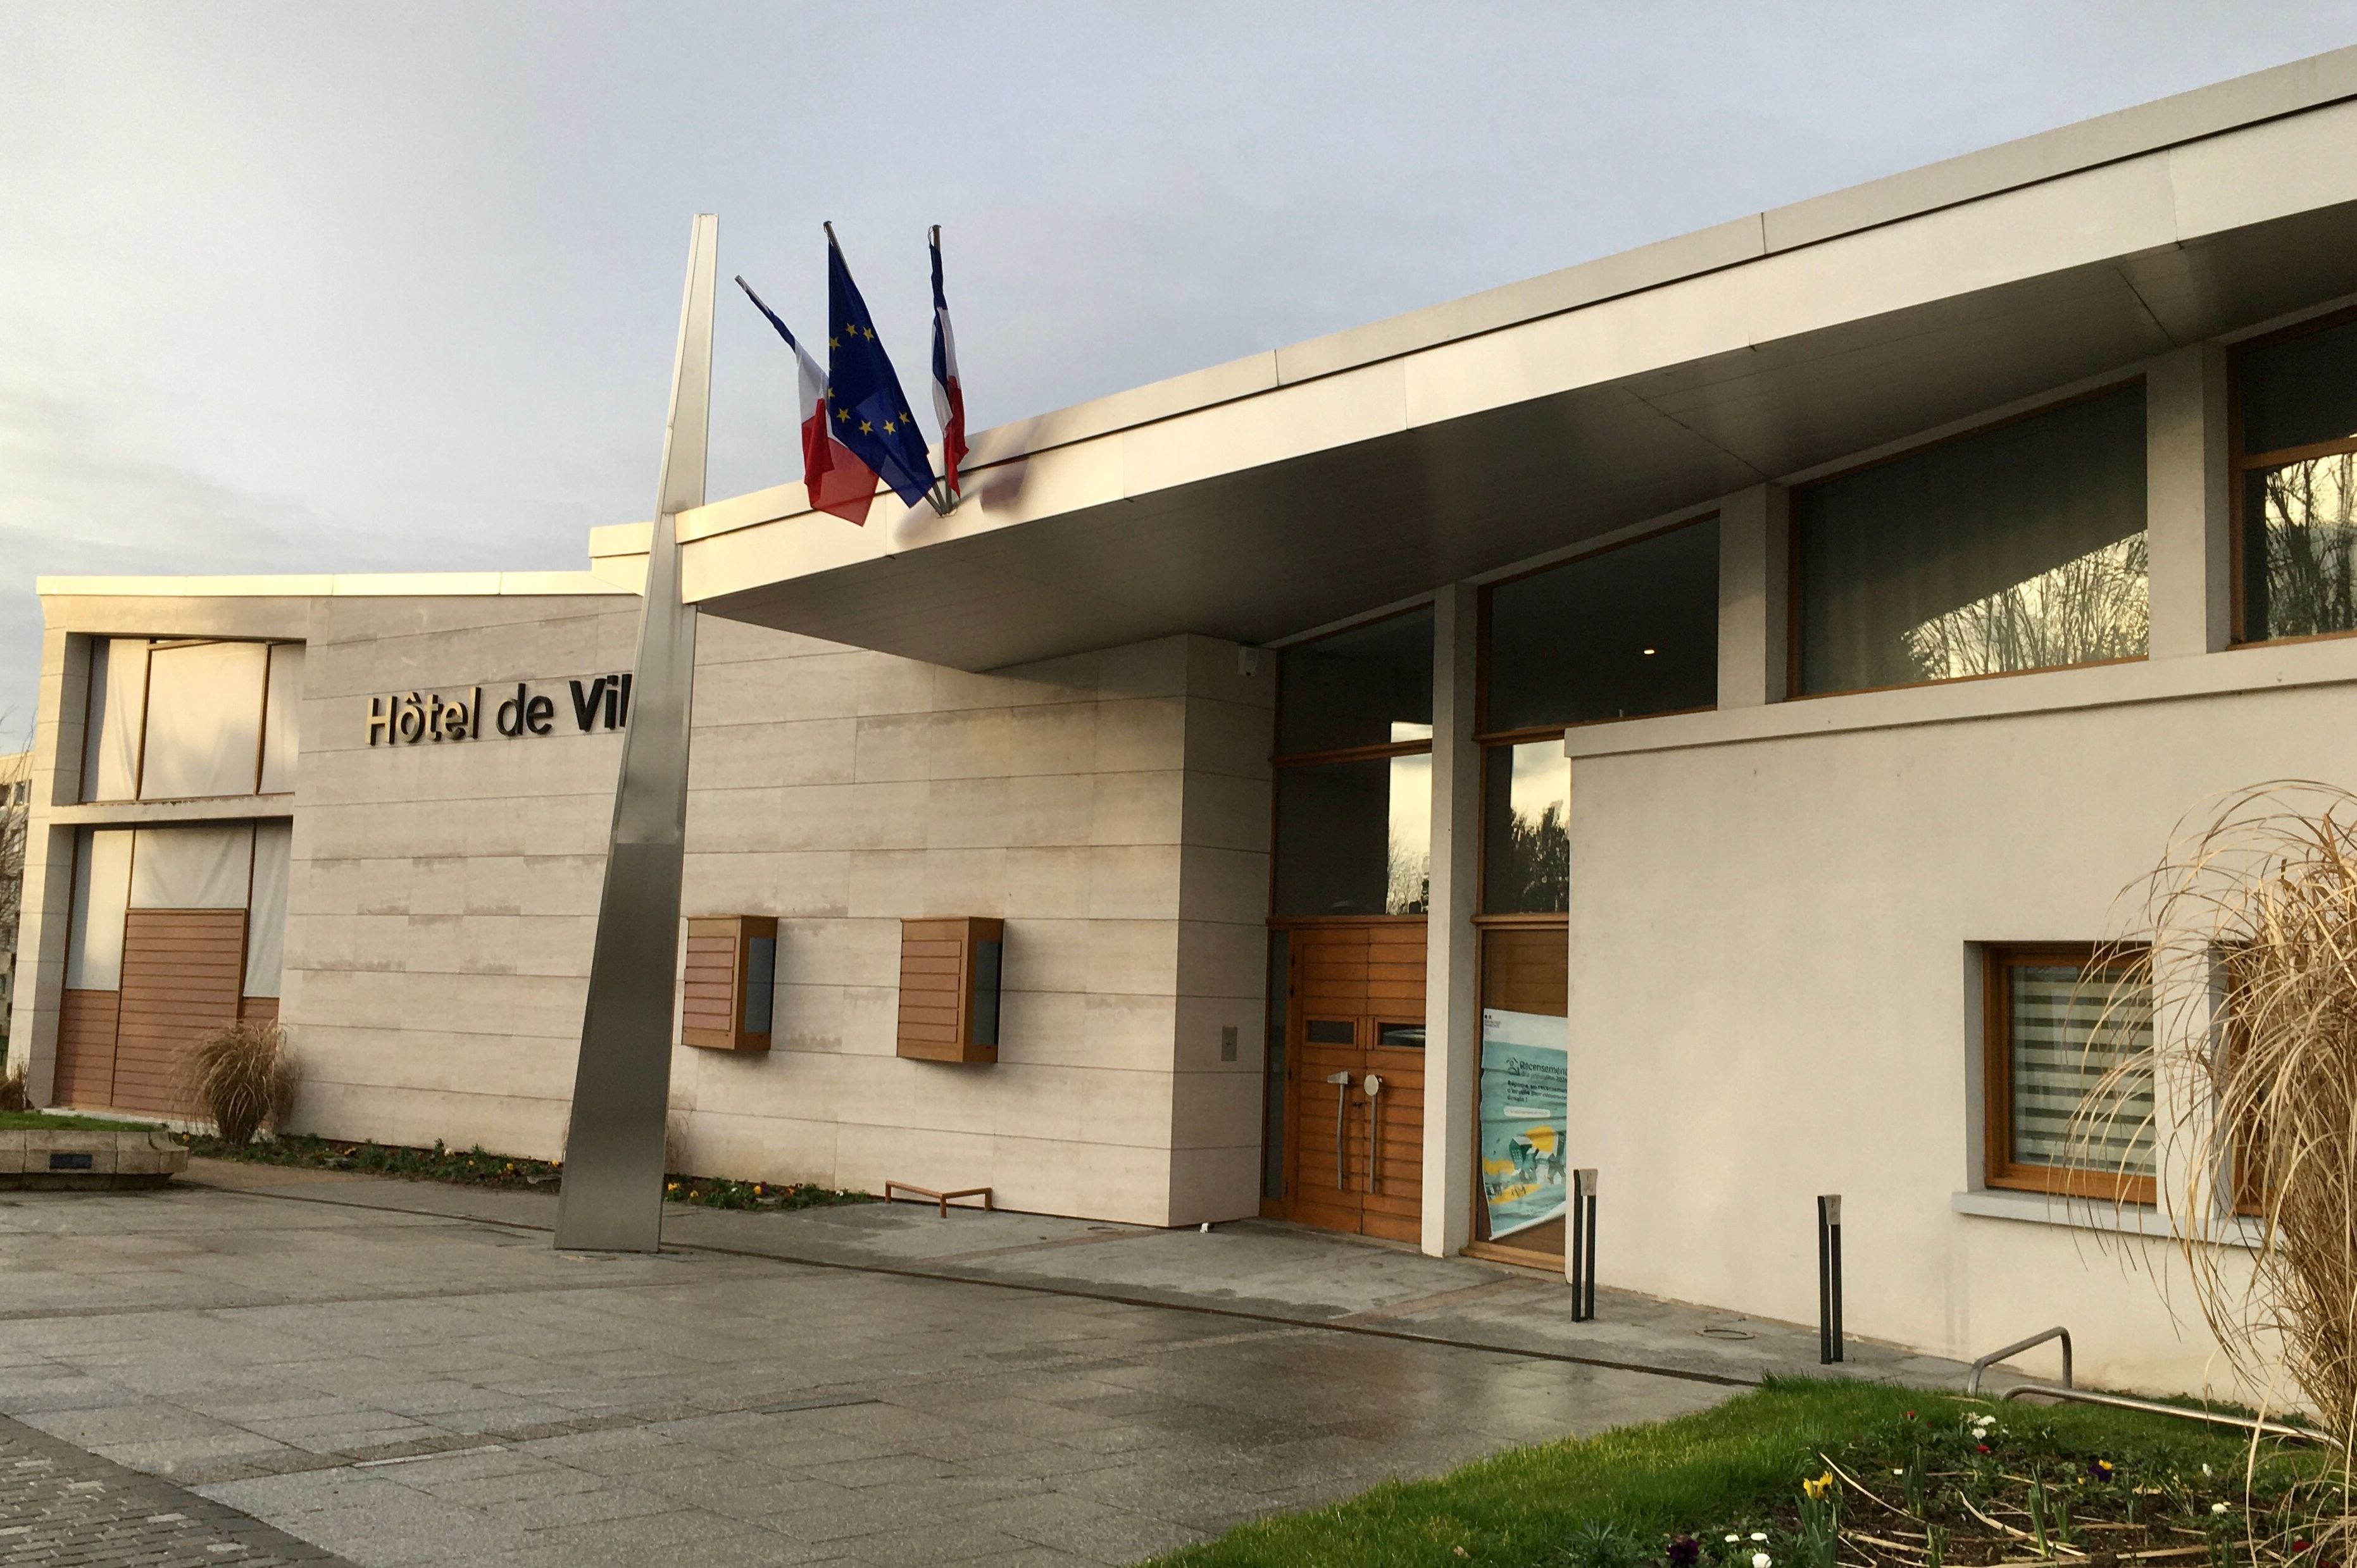 Depuis deux mois, la mairie de Tinqueux (Marne) ne délivre plus de cartes d'identité et de passeports, il faut se rendre dans une commune voisine, comme à Reims. LP/Marie Blanchardon